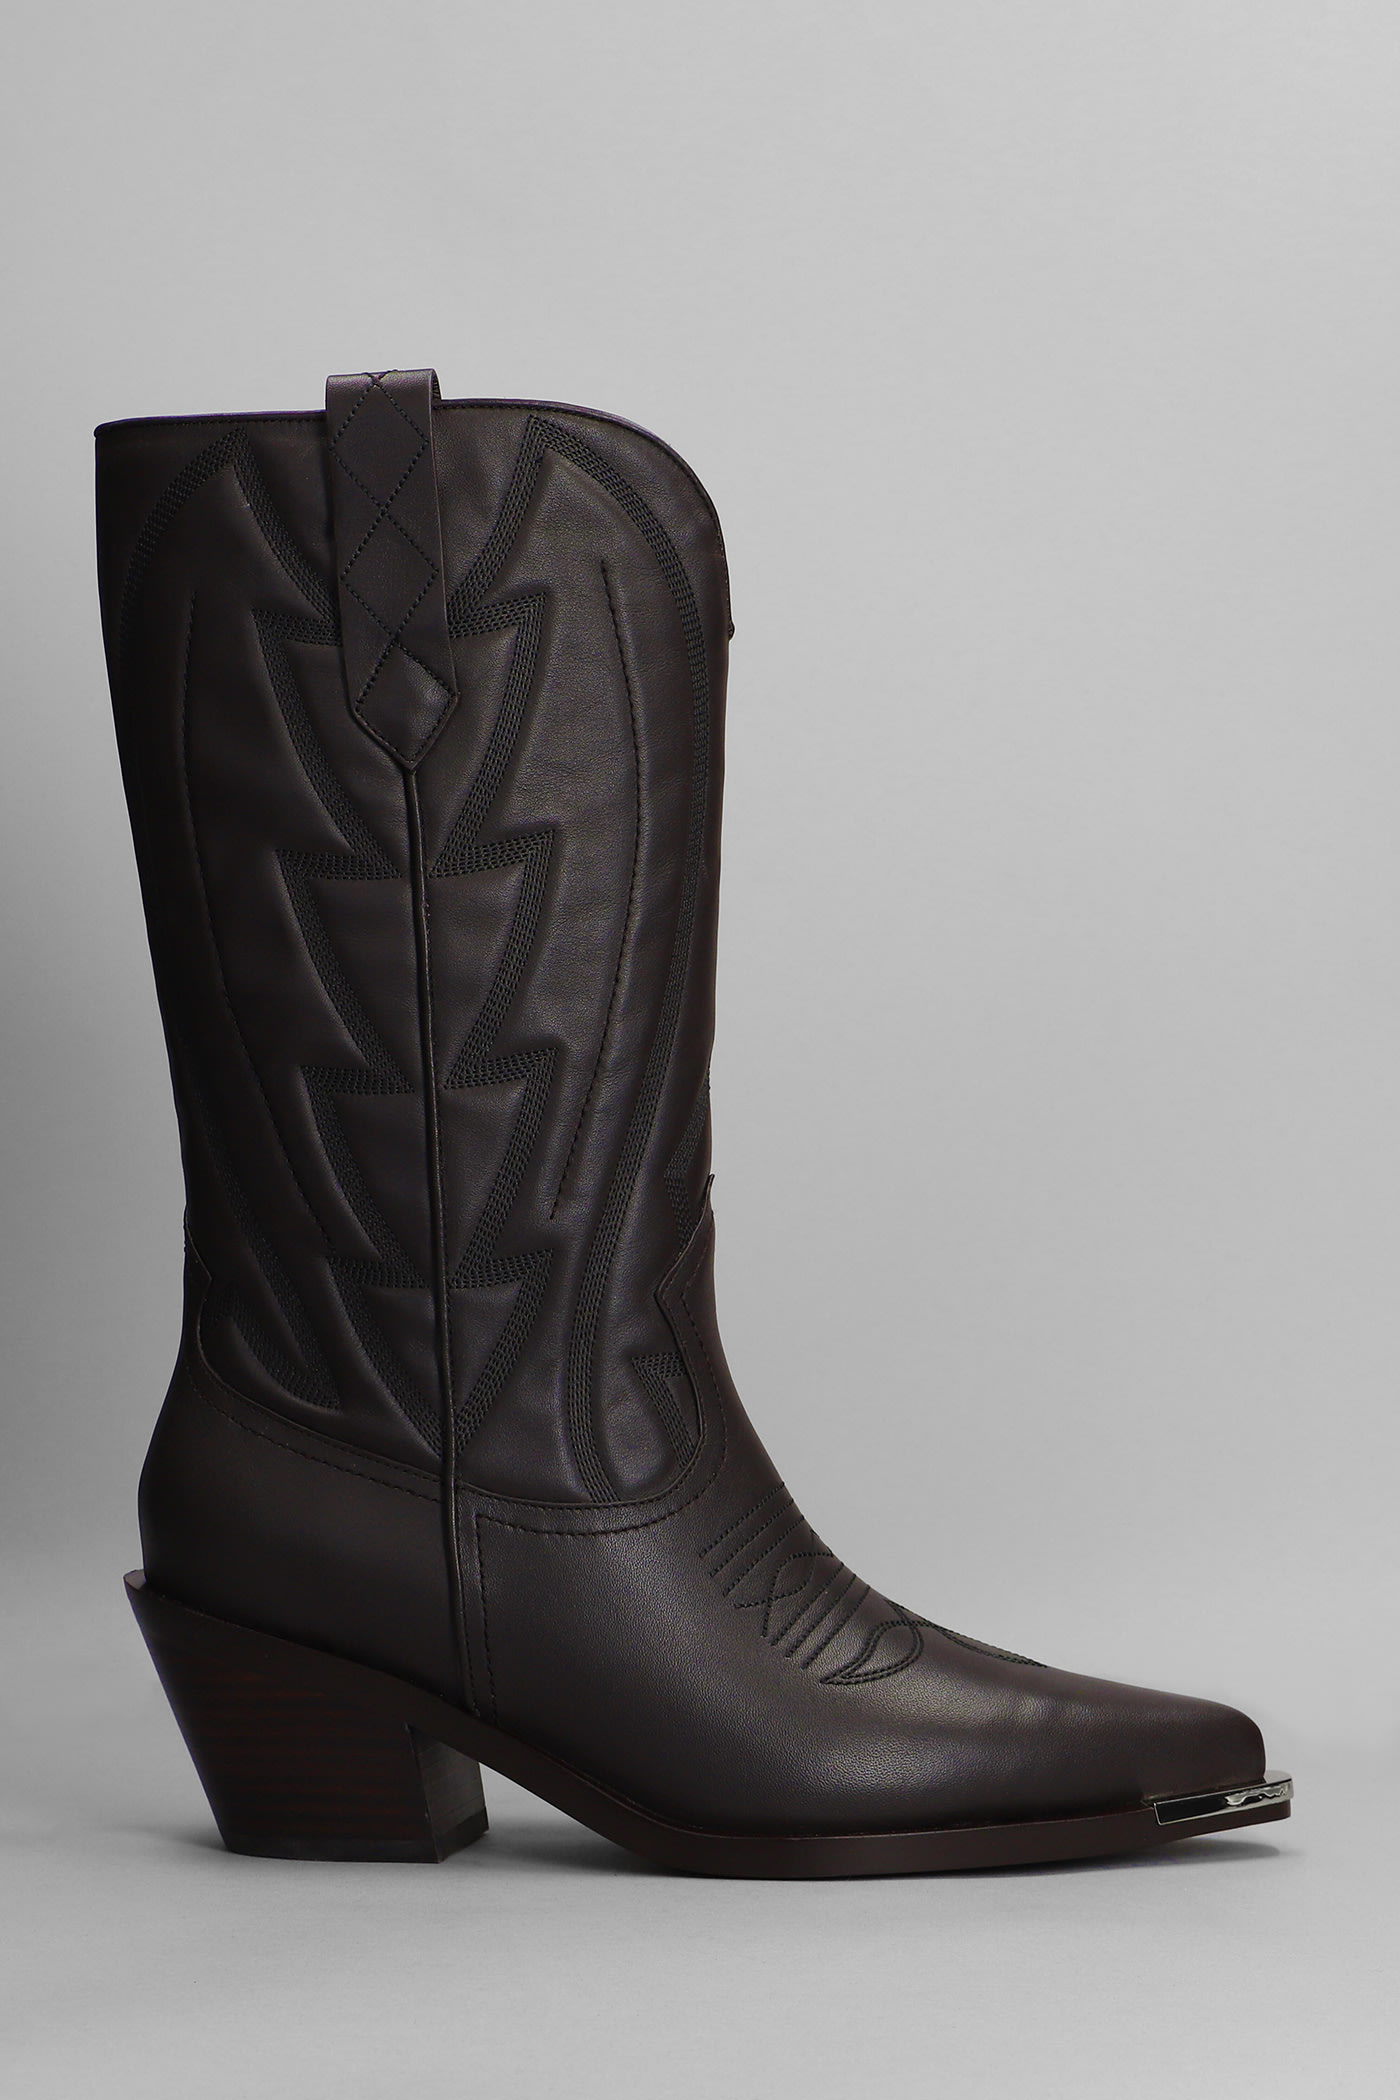 Lola Cruz Texan Boots In Brown Leather